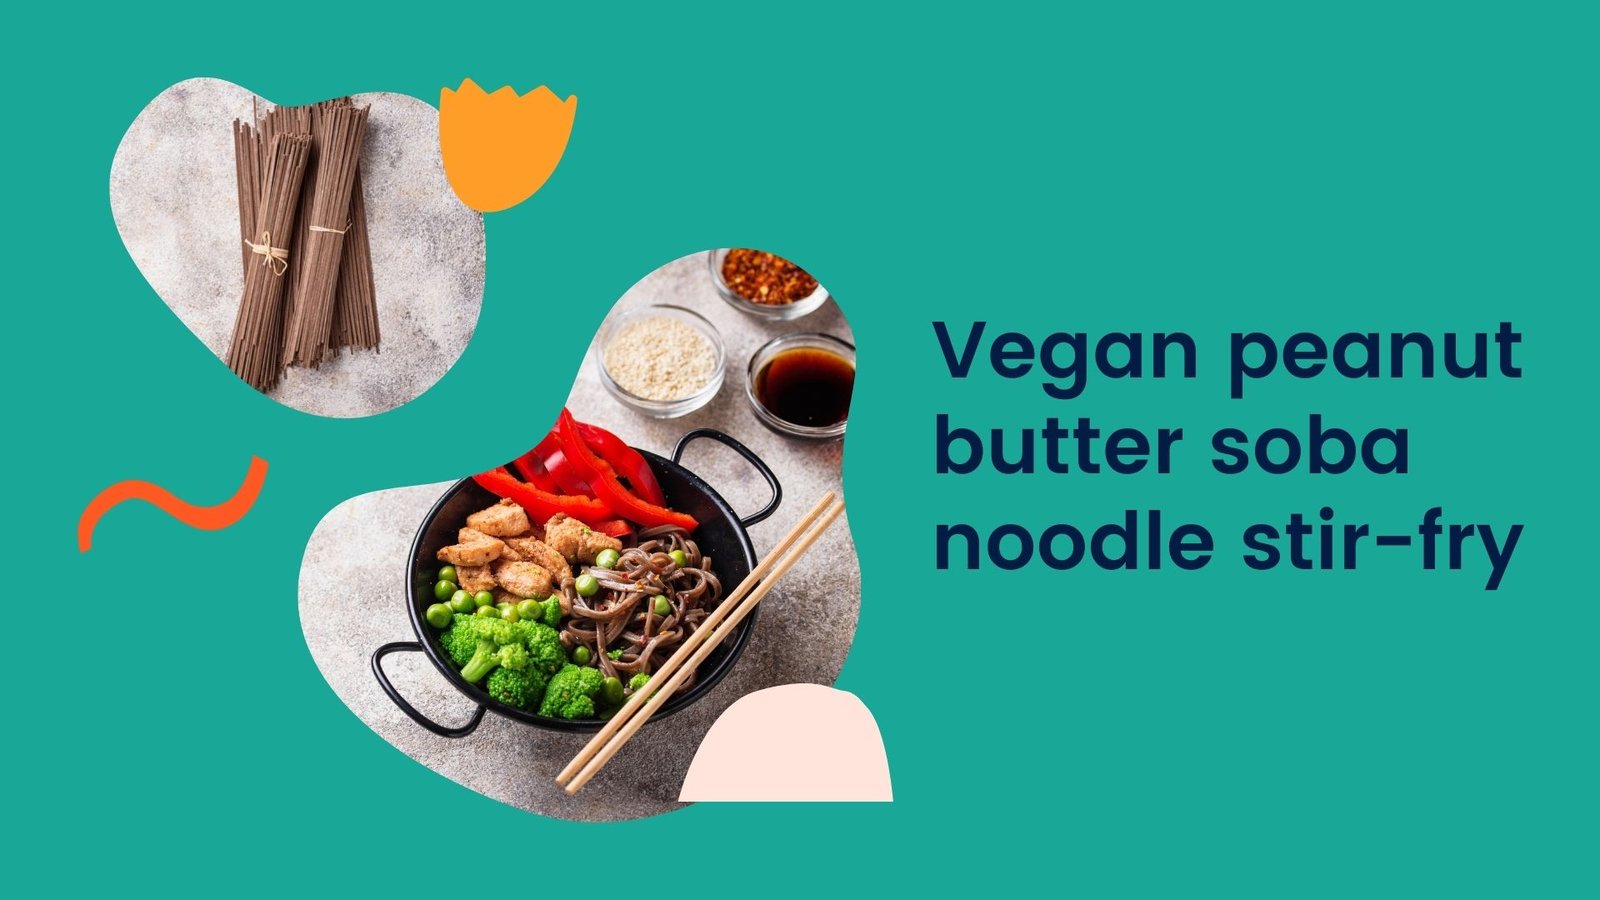 Vegan peanut butter soba noodle stir-fry 